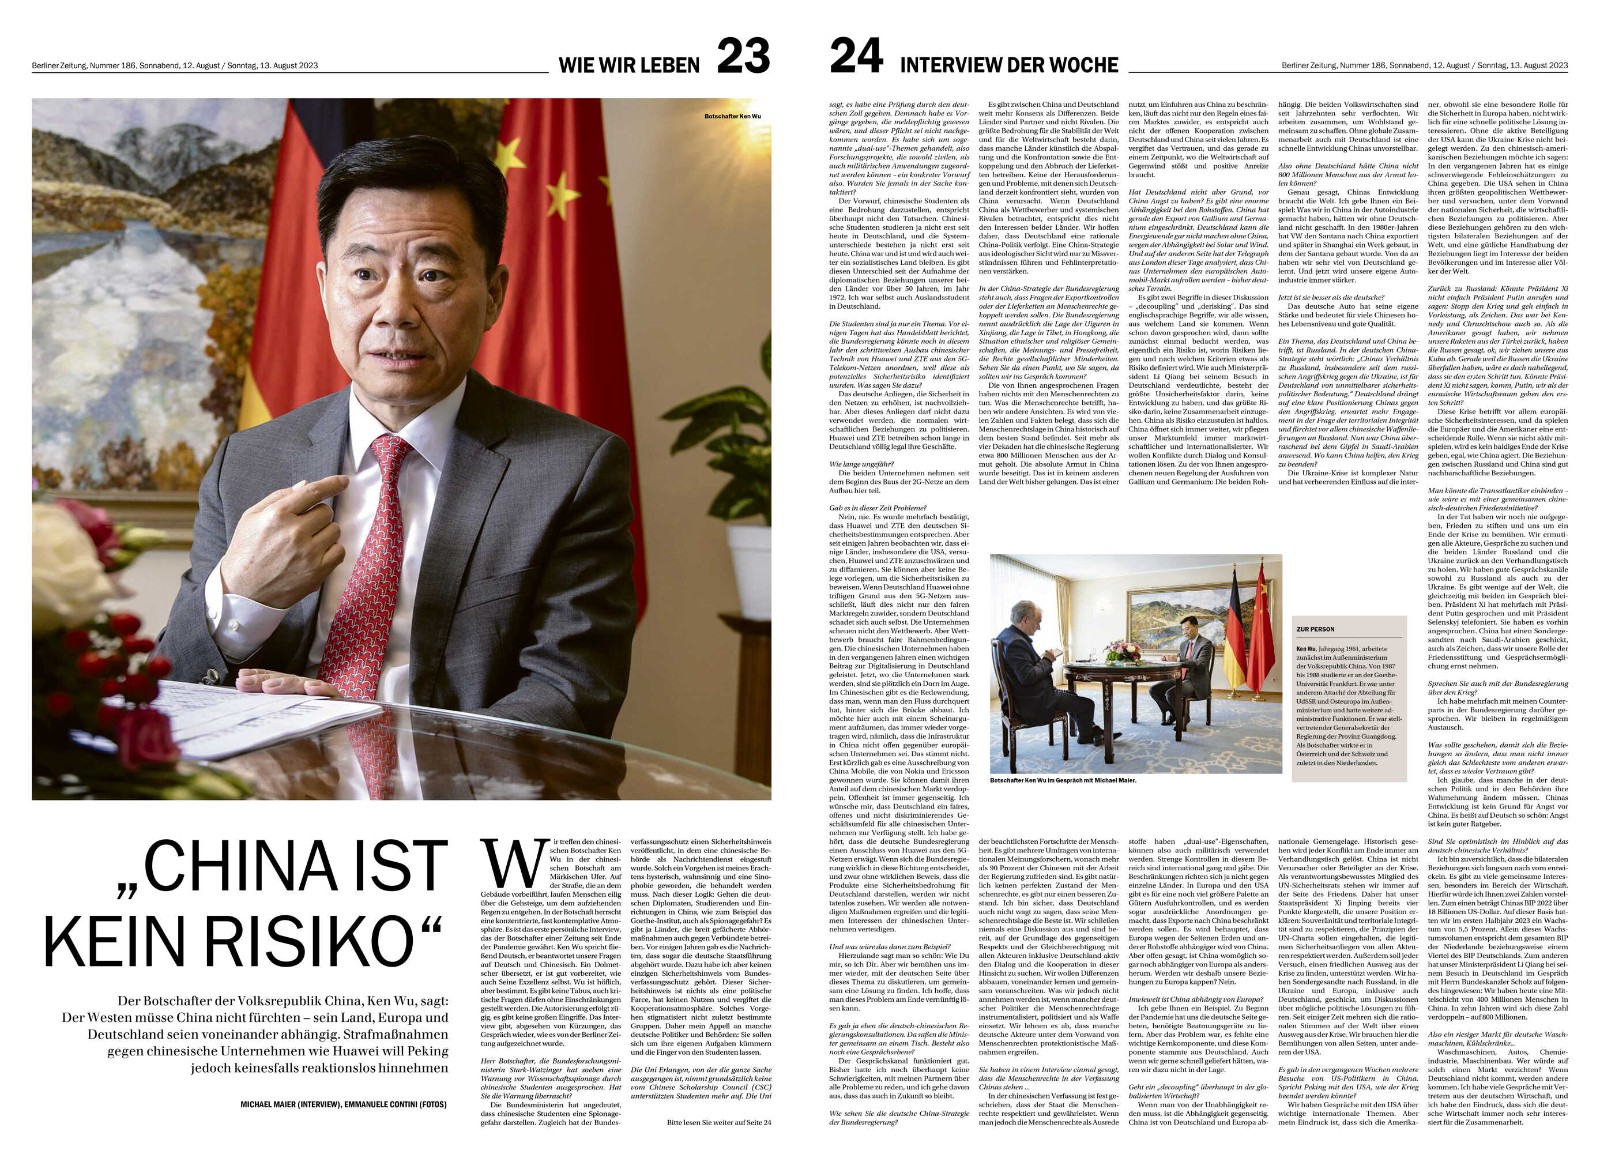 留学德国的中国人是“风险”吗？中国驻德大使这样回应！